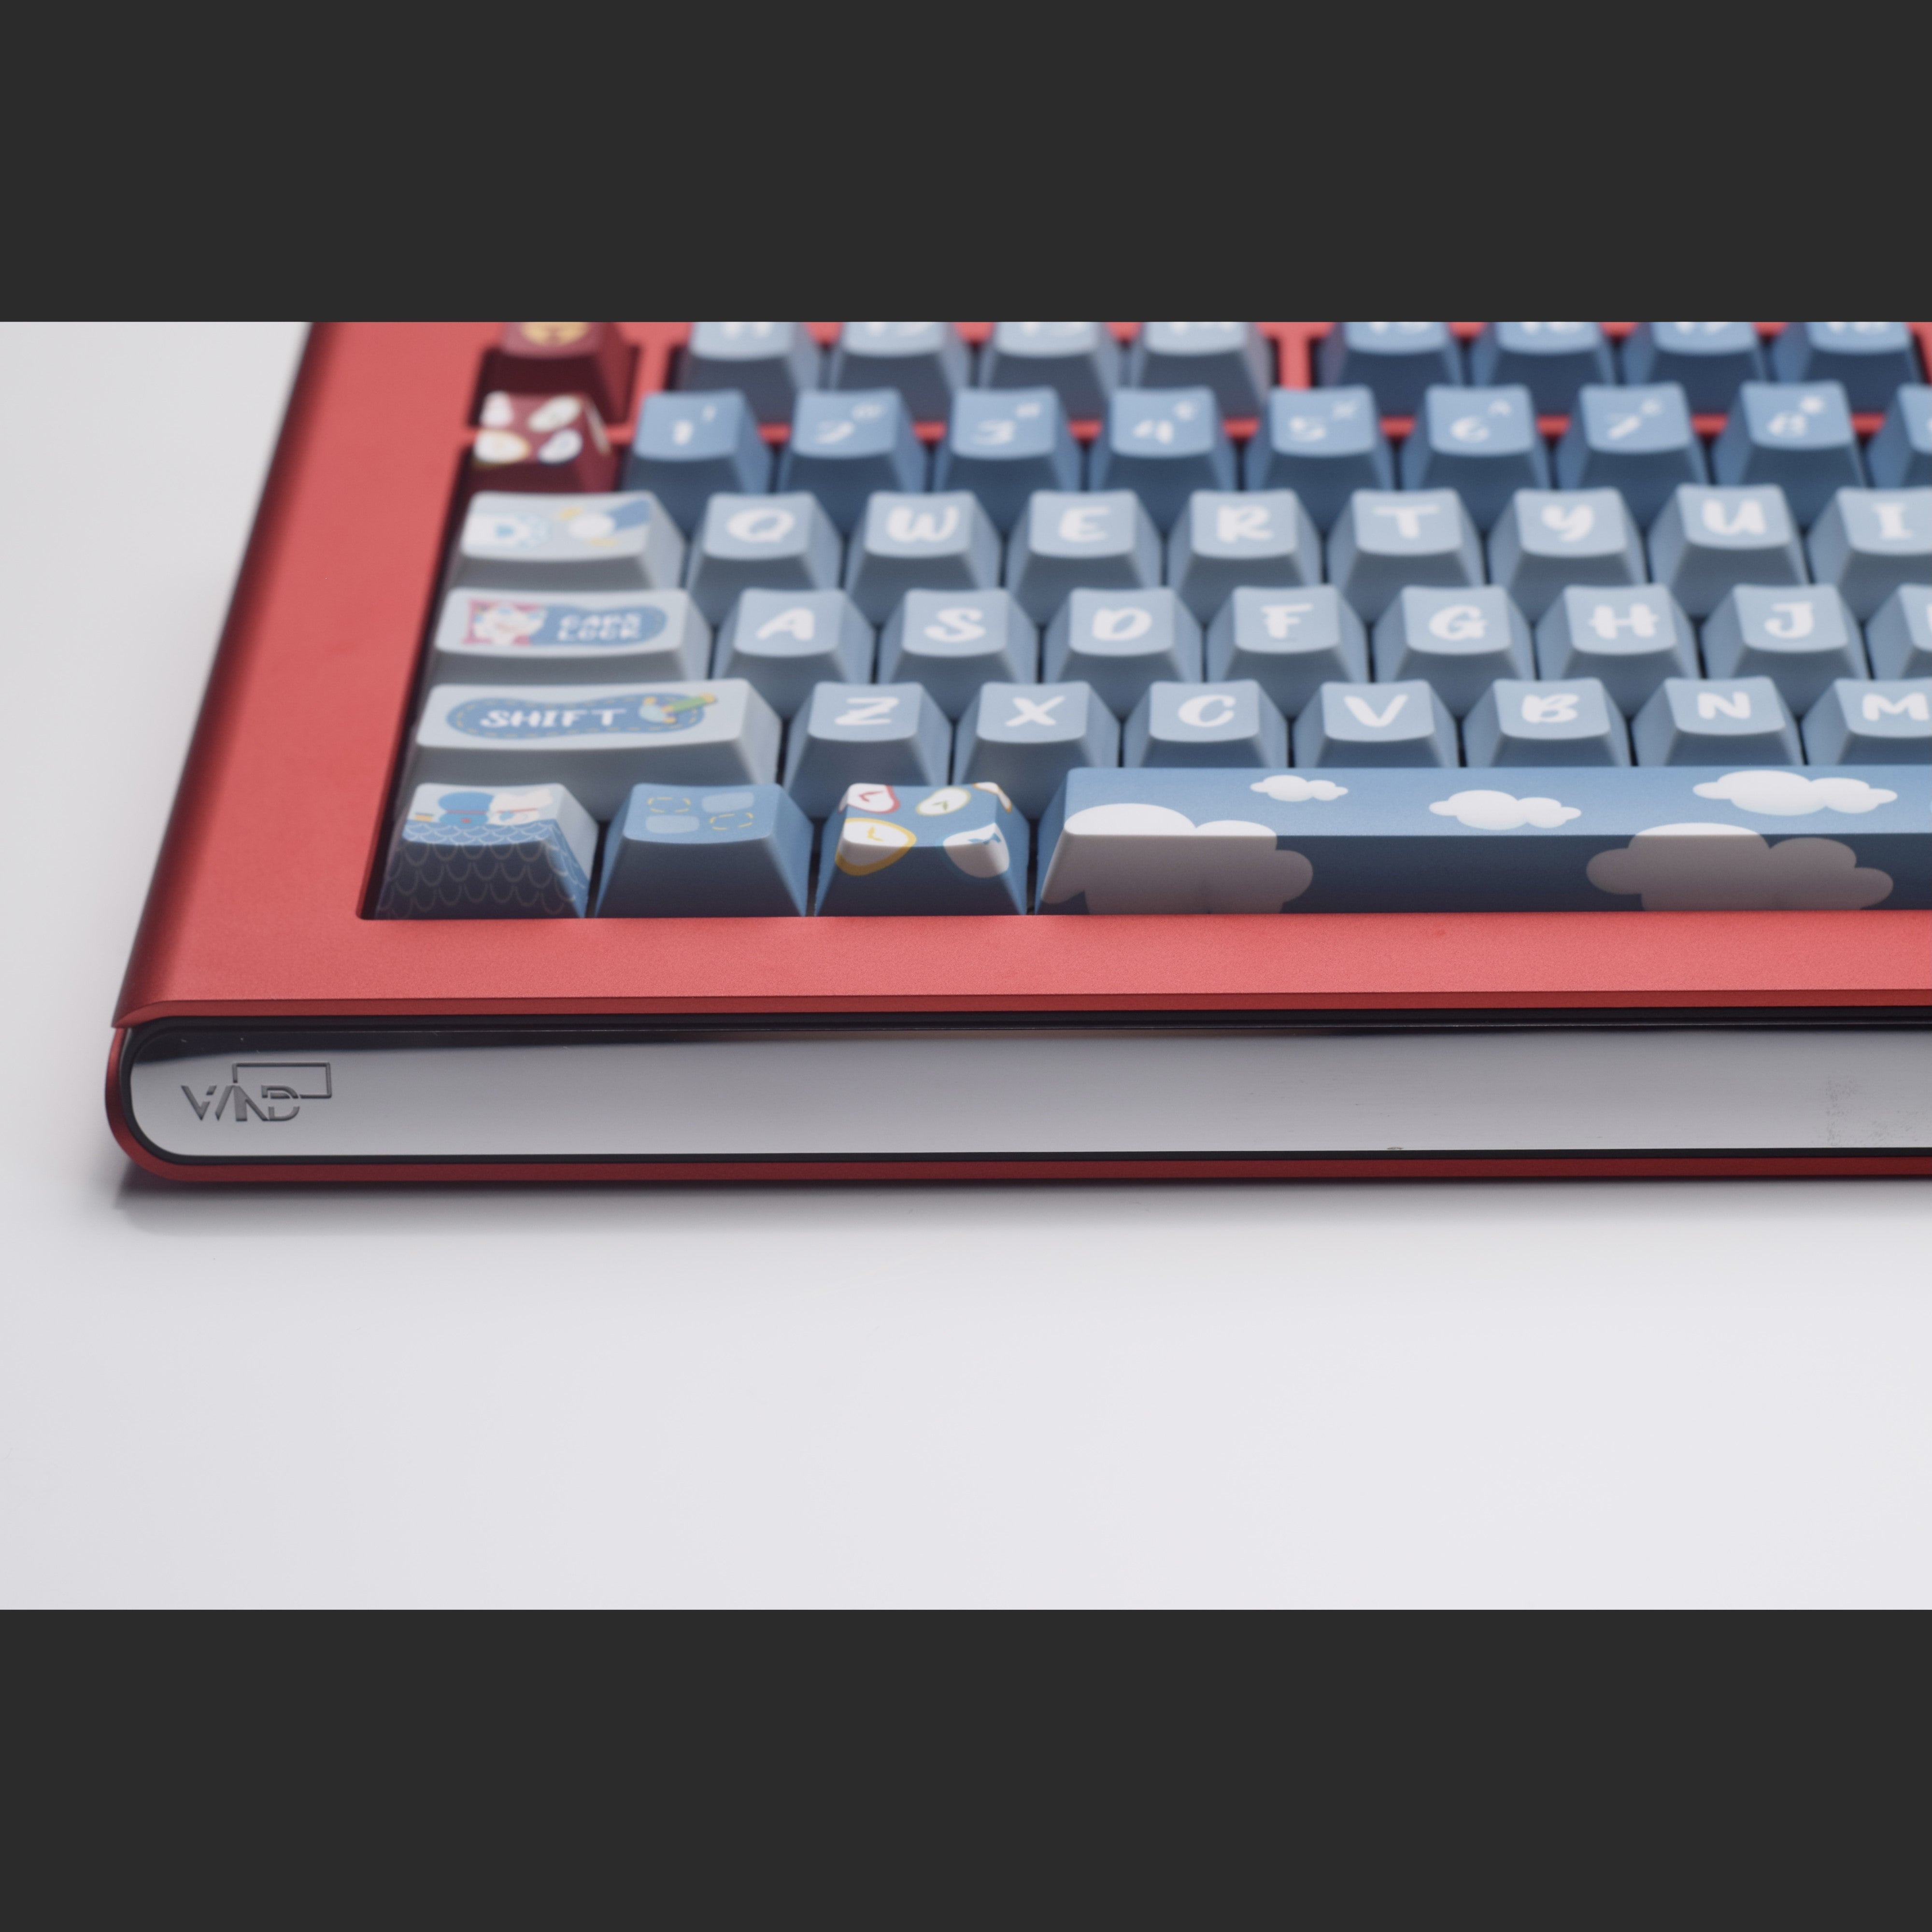 Group-Buy WIND Z75 Keyboard Kit